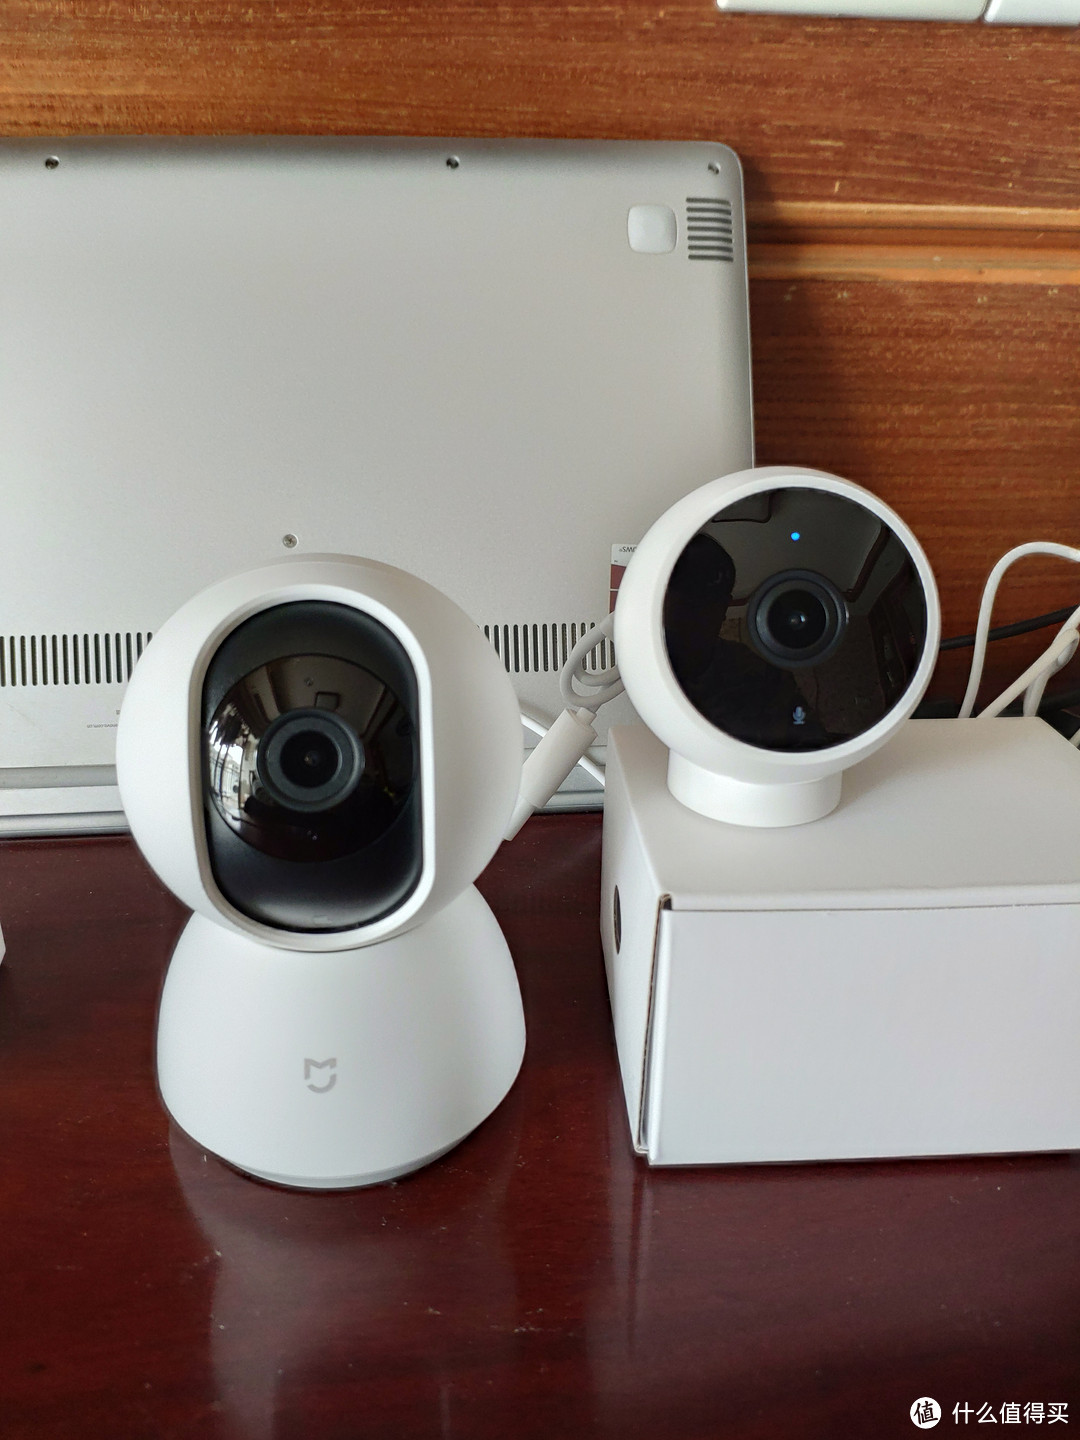 小米米家智能摄像机云台版(云)和小米智能摄像机标准板(右)